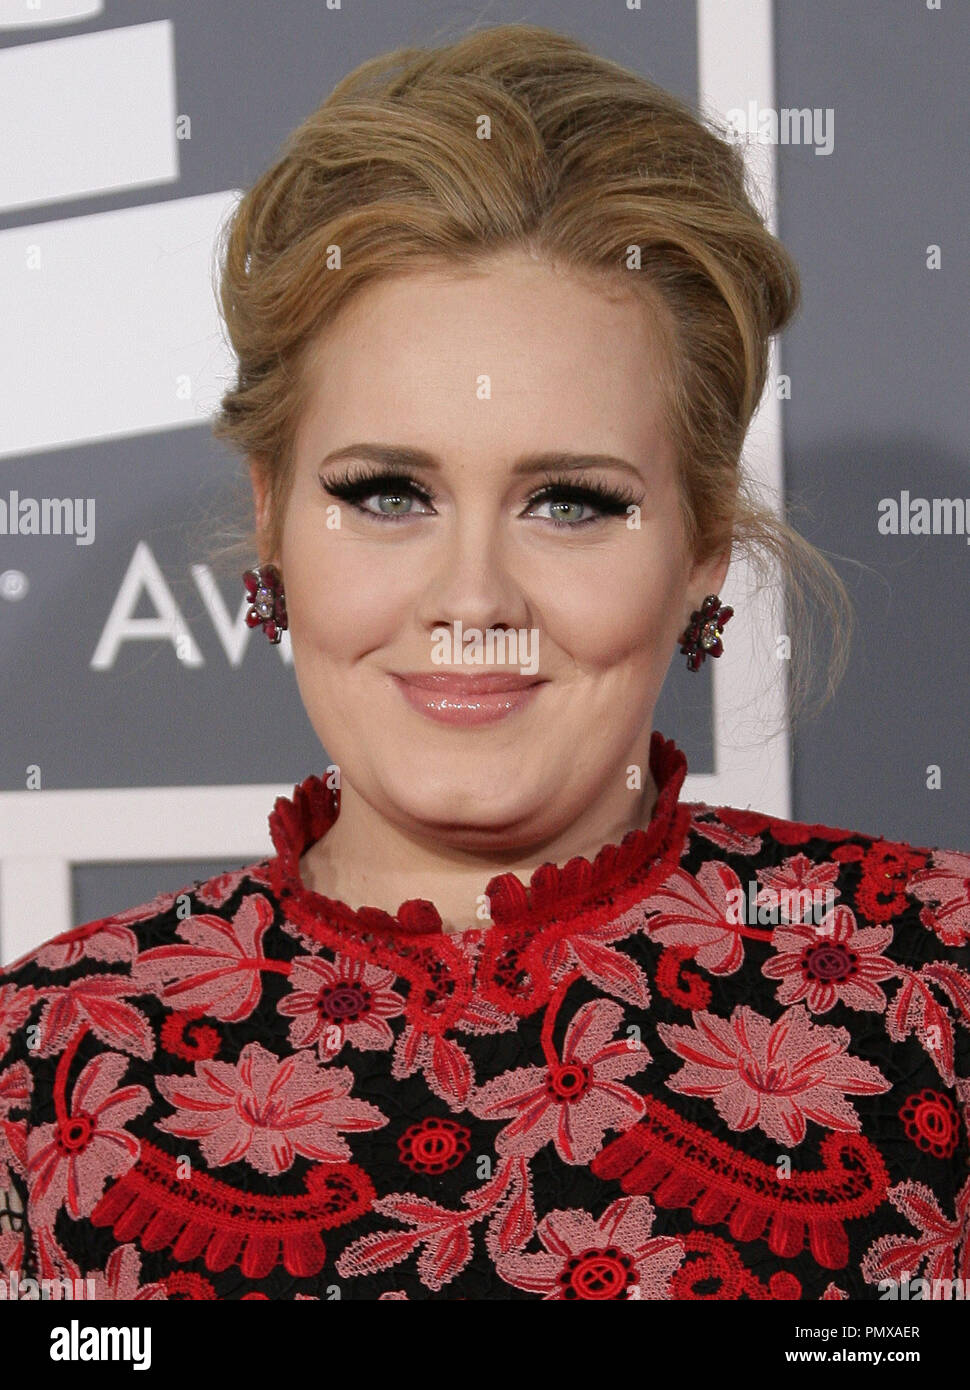 Adele auf der 55. jährlichen Grammy Awards im Staples Center in Los Angeles, CA. Die Veranstaltung fand am Sonntag, 10. Februar 2013. Foto von PRPP/PictureLux Datei Referenz # 31836 005 PRPP nur für redaktionelle Verwendung - Alle Rechte vorbehalten Stockfoto